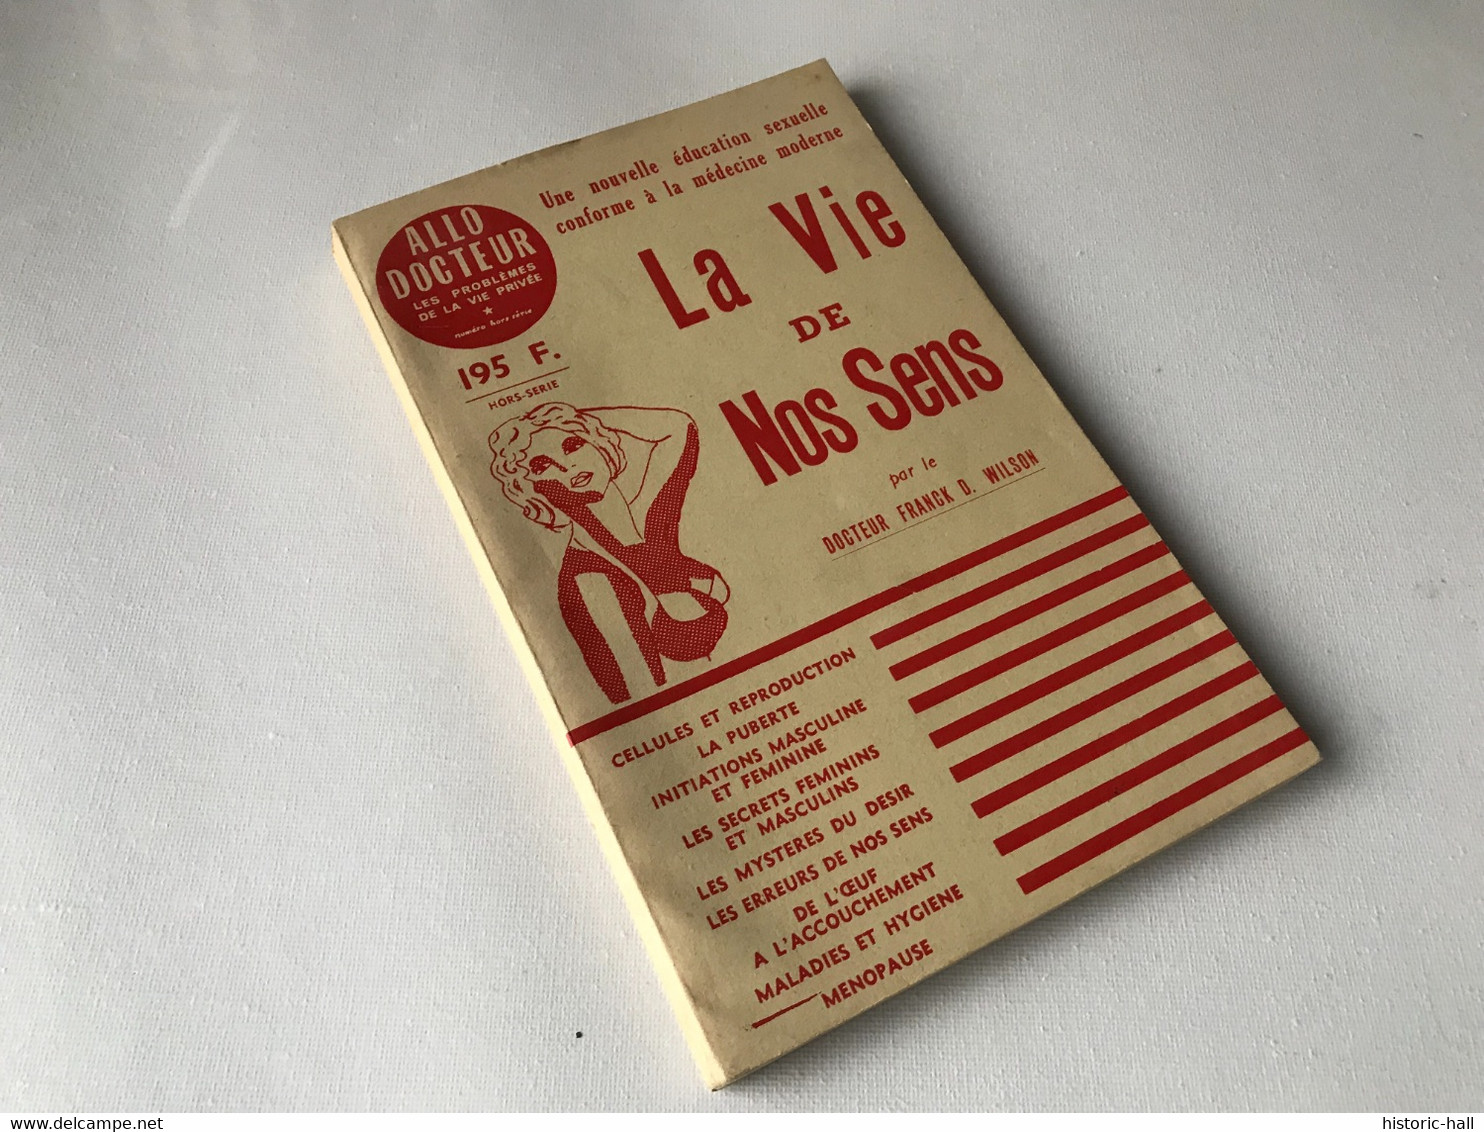 LA VIE DE NOS SENS - Nouvelle éducation Sexuelle - 1956 - Dr. Franck D. WILSON - Medicina & Salud